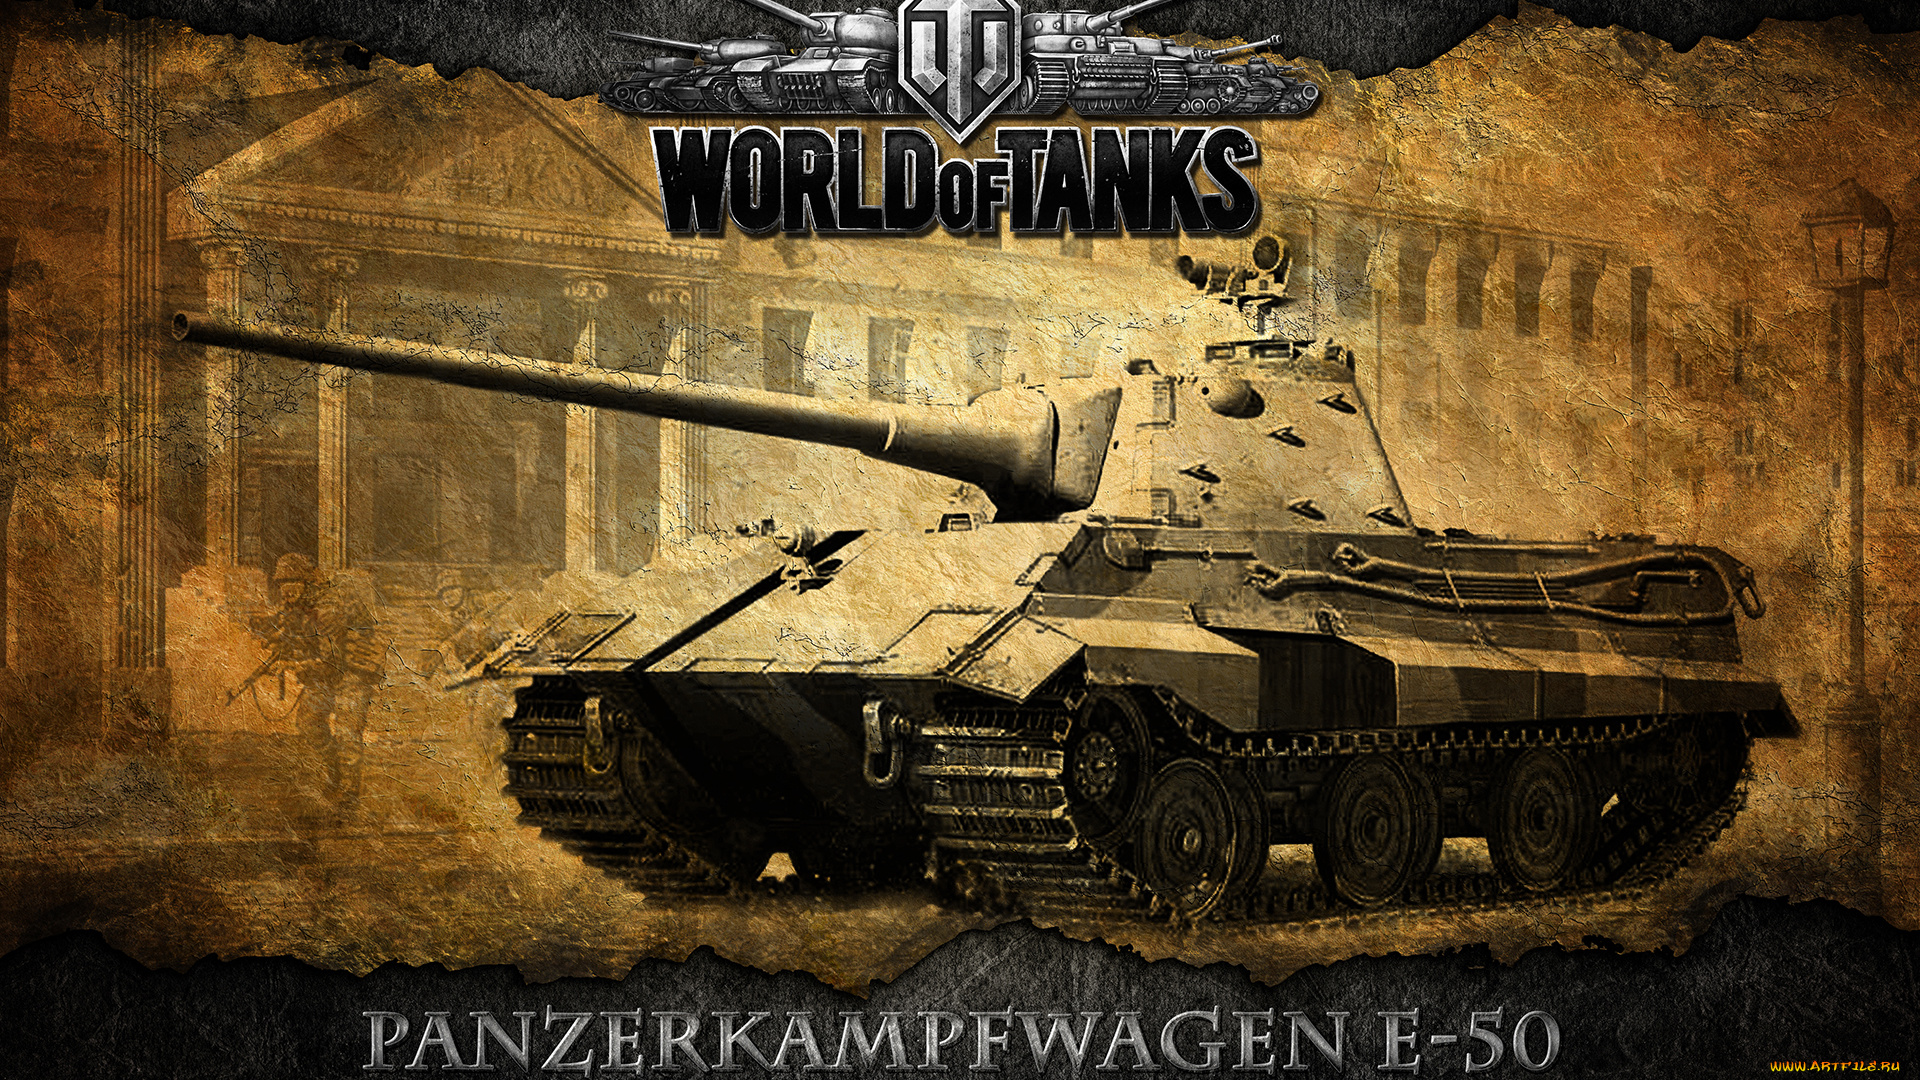 50, видео, игры, мир, танков, world, of, tanks, e-50, немецкий, танк